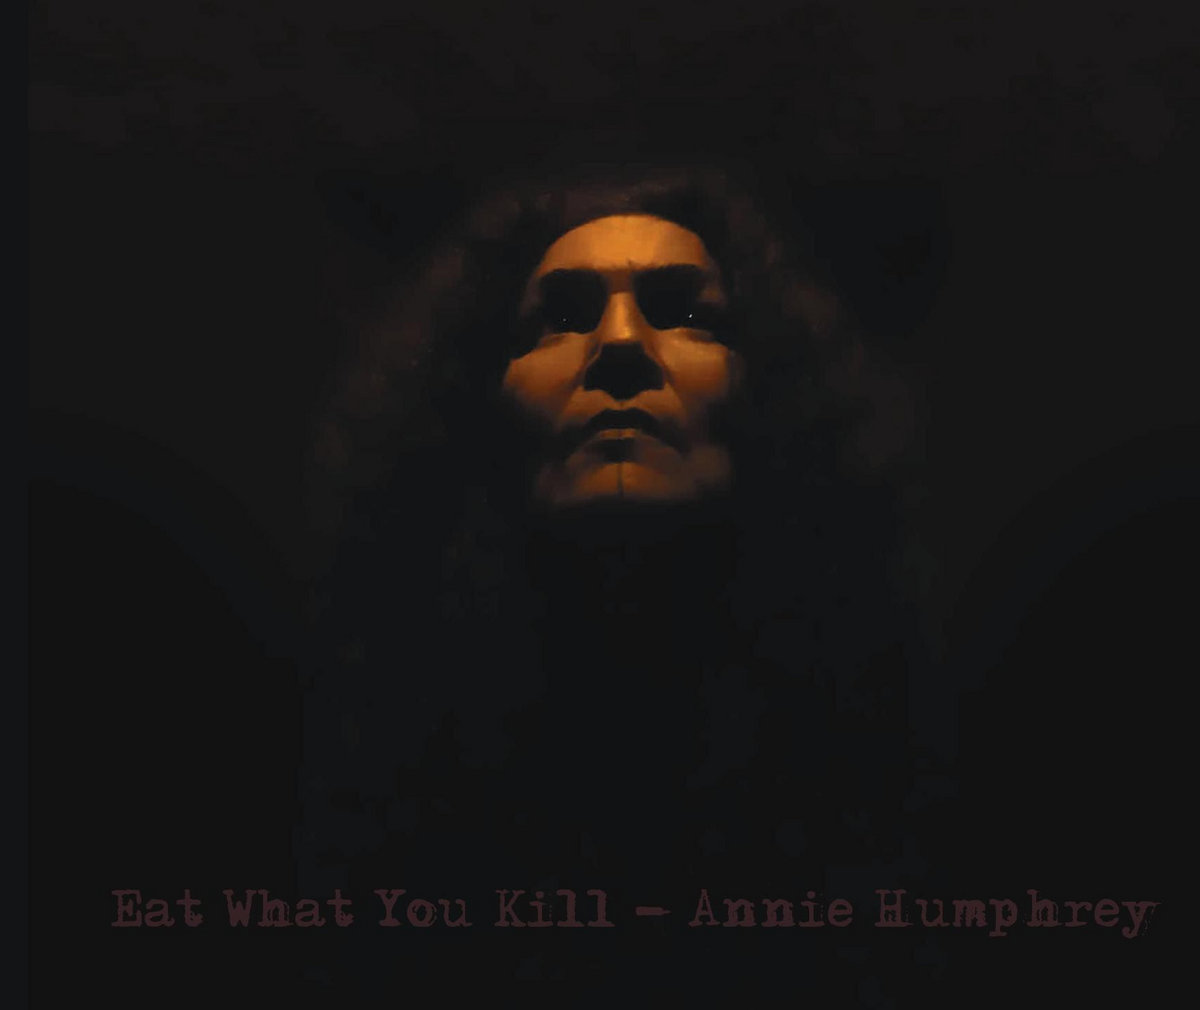 Annie Humphrey's Eat What You Kill